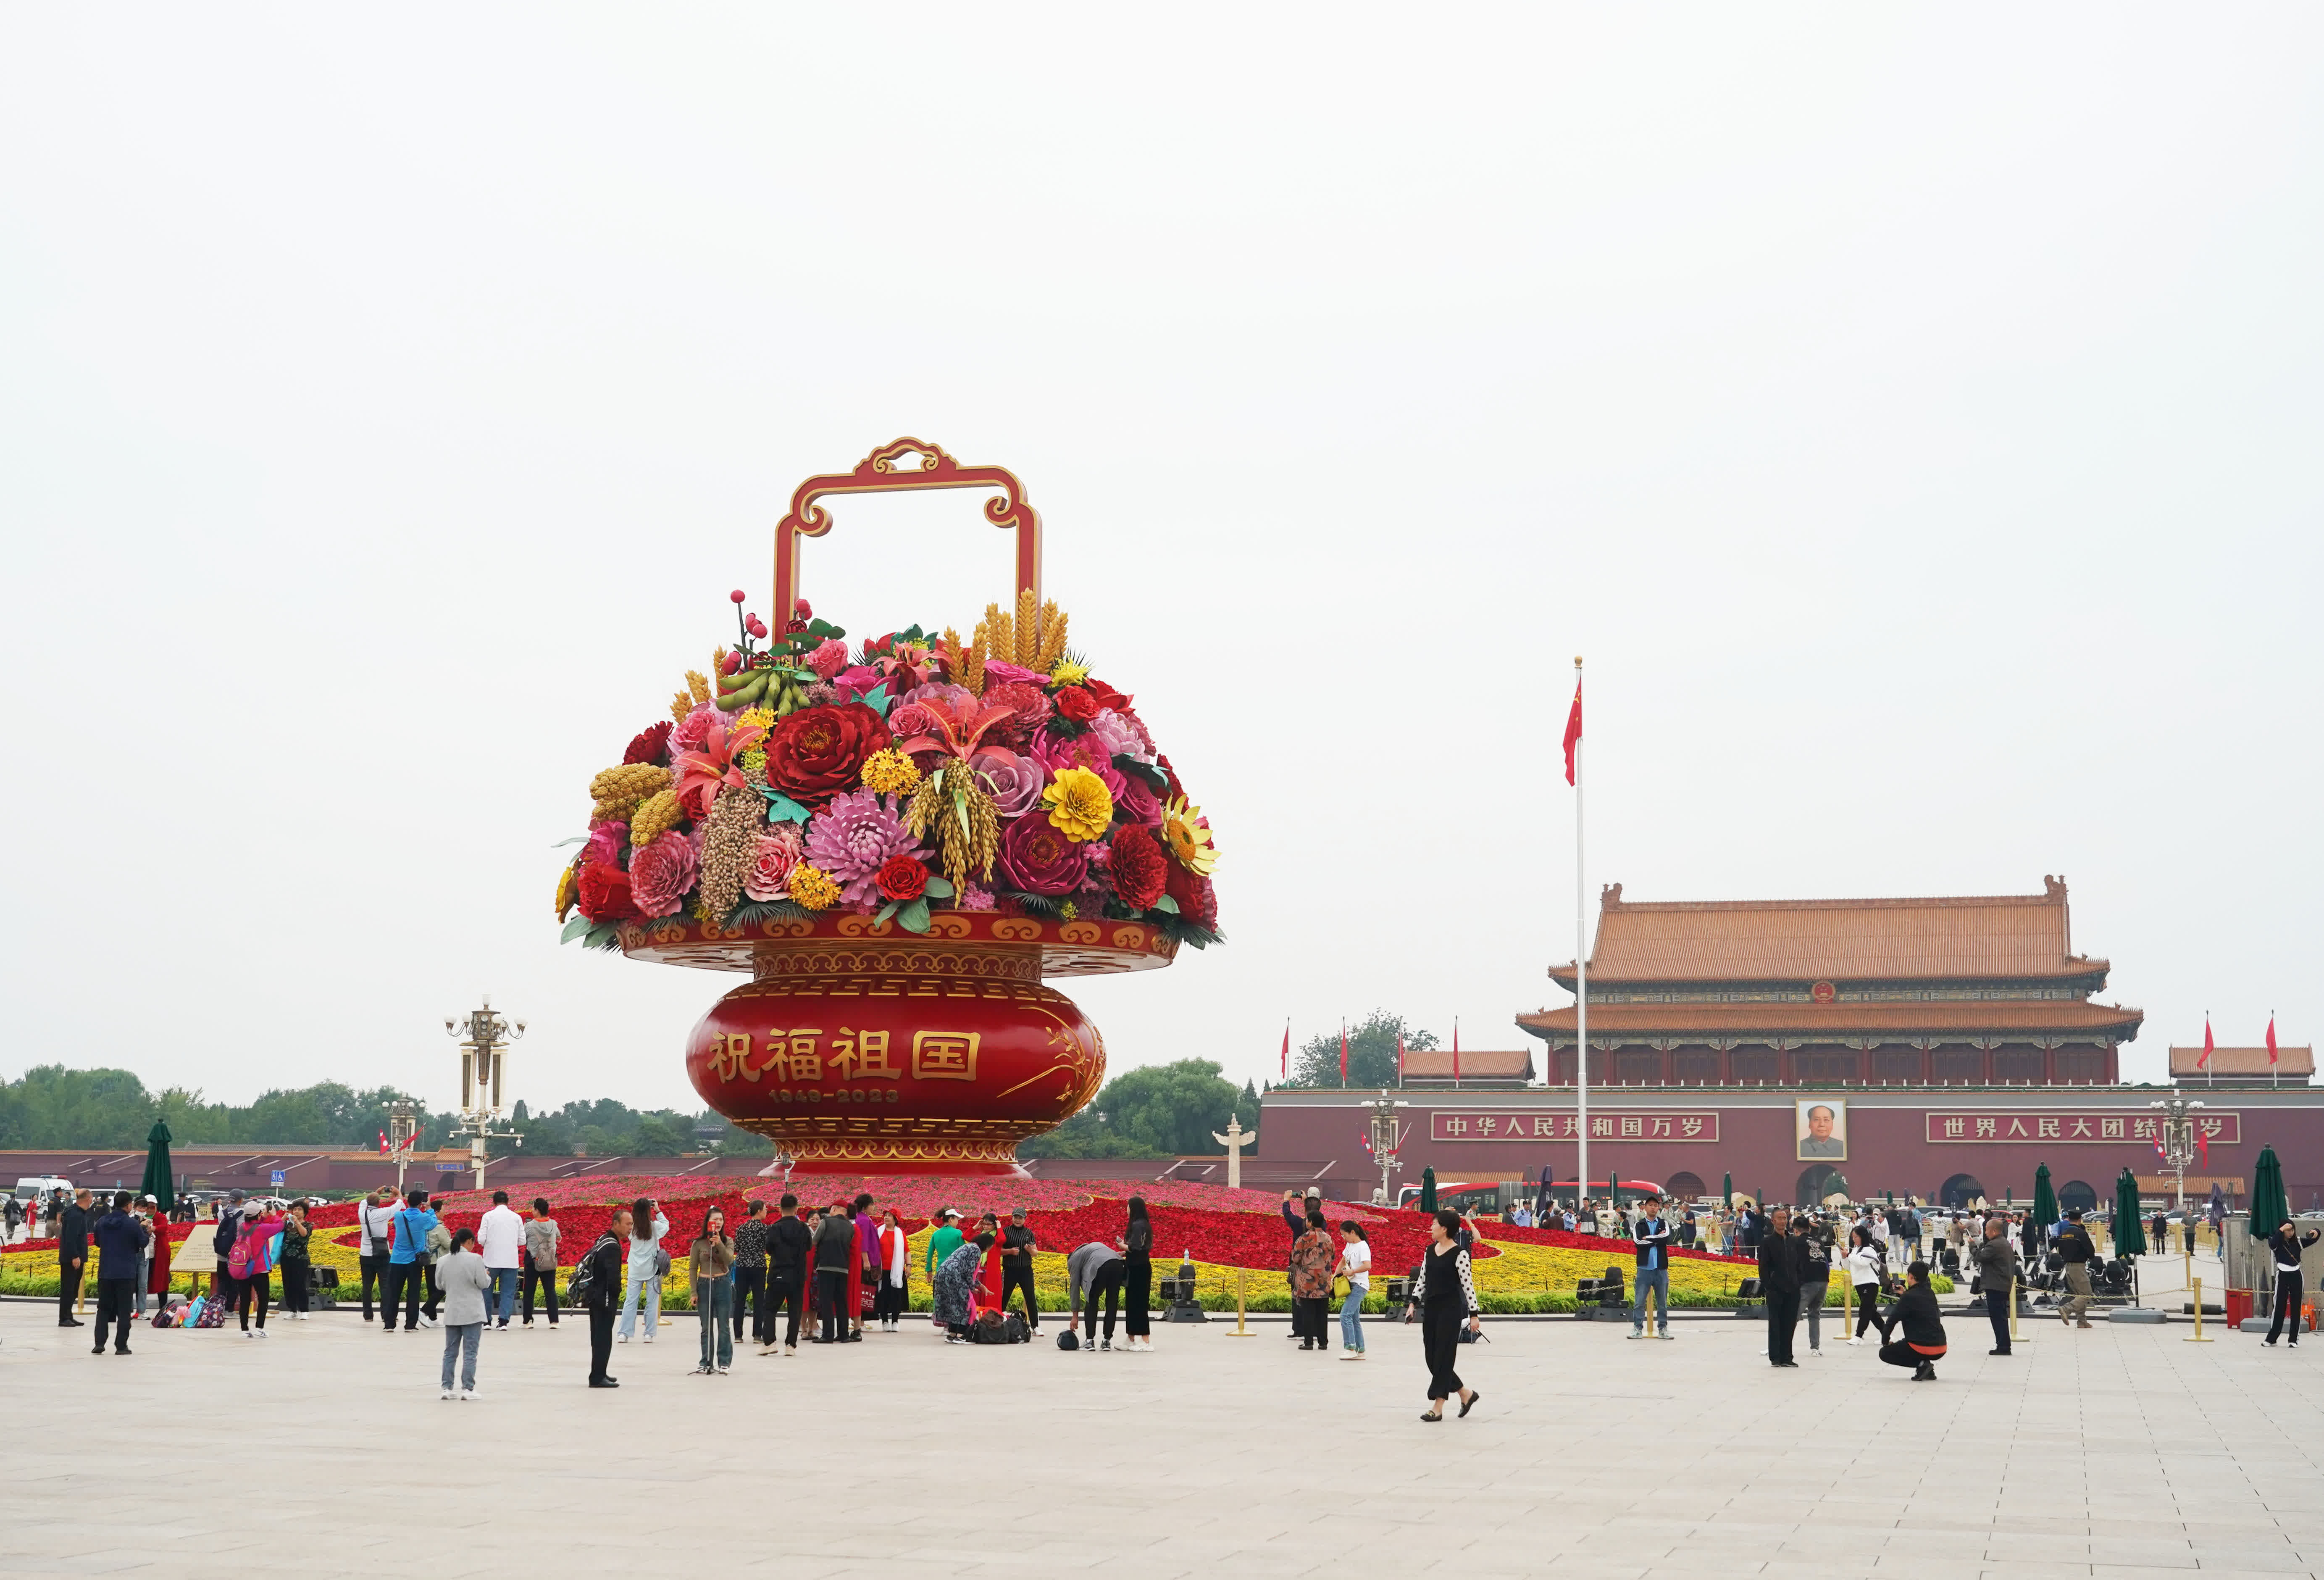 這是9月25日在北京天安門廣場拍攝的「祝福祖國」巨型花籃。